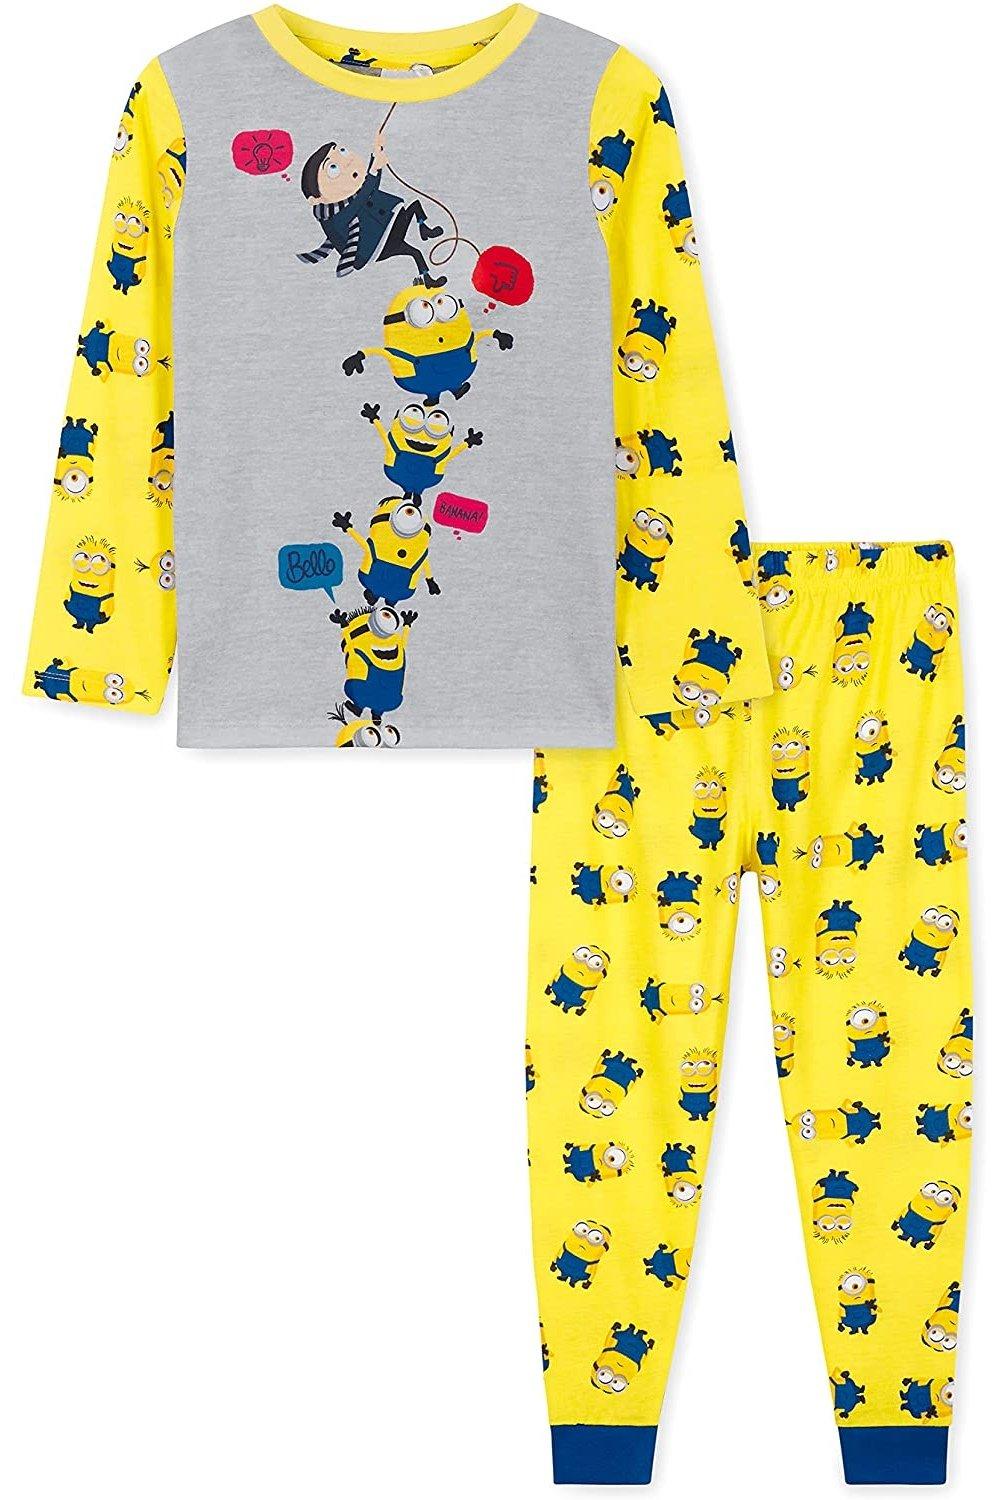 Длинный пижамный комплект Minions, желтый пижама для мальчиков